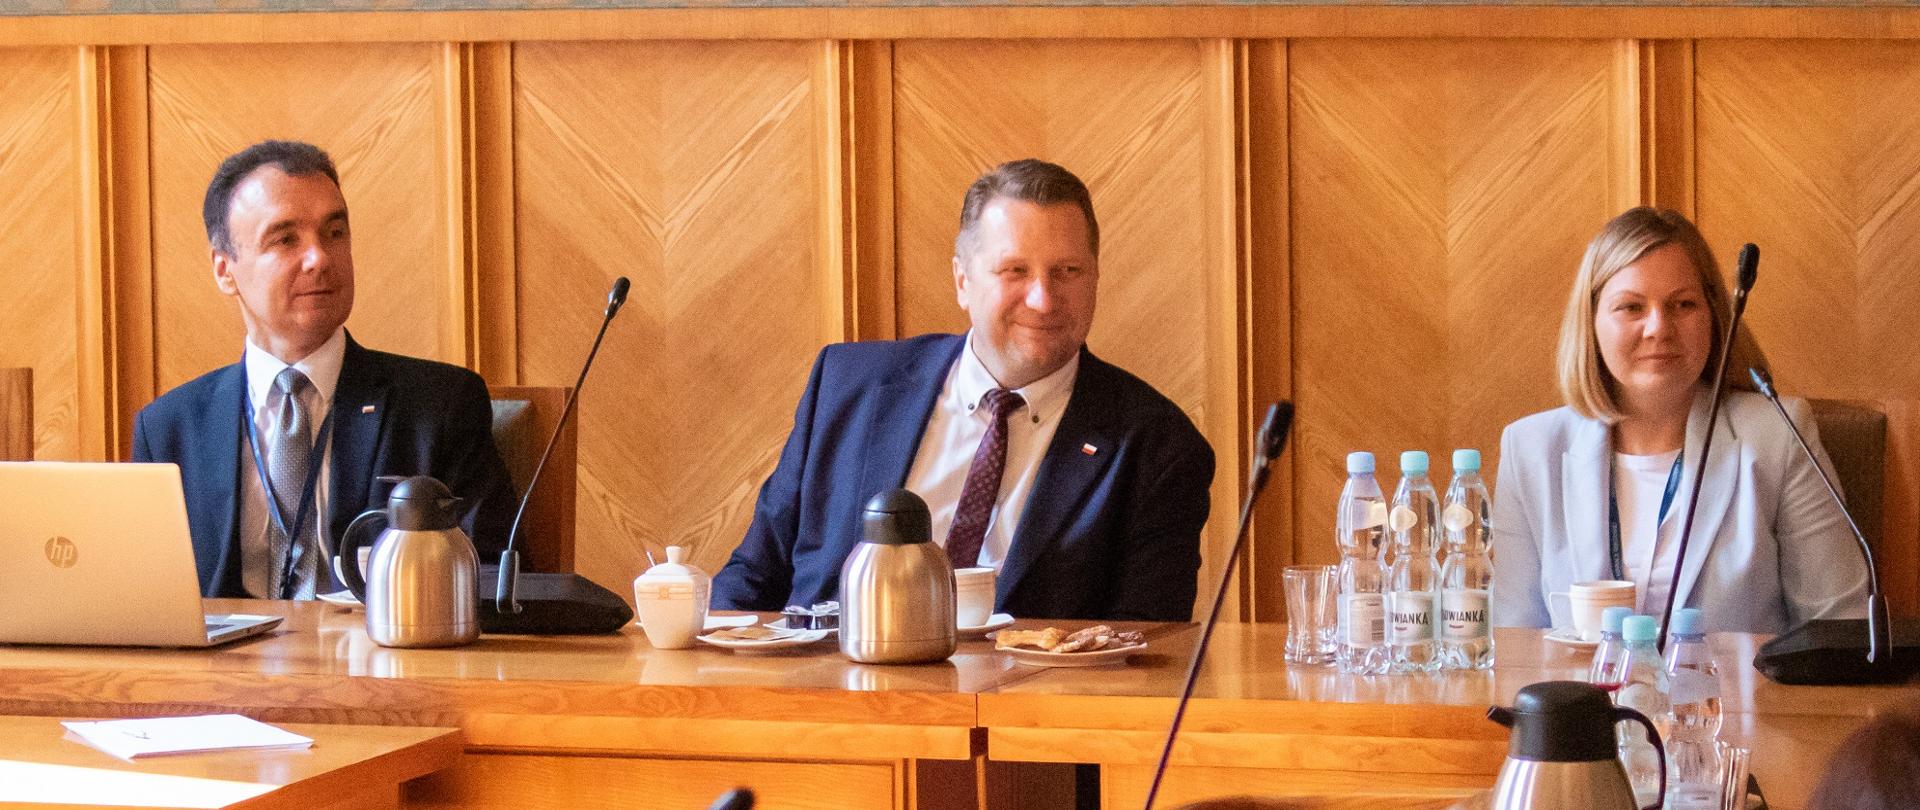 Minister Czarnek siedzi za drewnianym stołem, obok niego siedzi ubrana w jasne ubranie kobieta i mężczyzna w garniturze.